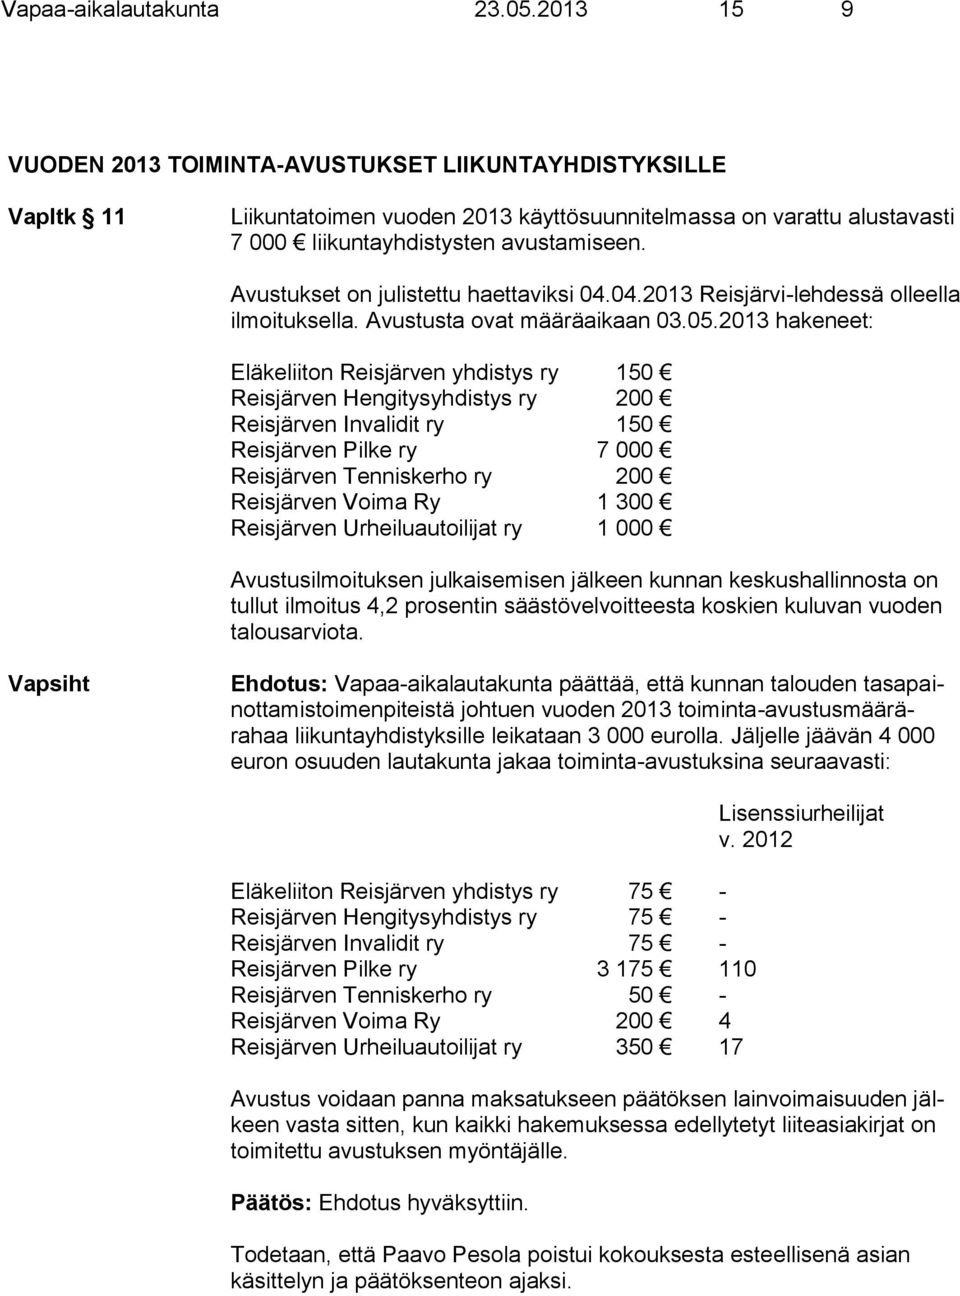 Avustukset on julistettu haettaviksi 04.04.2013 Reisjärvi-lehdessä olleella ilmoituksella. Avustusta ovat määräaikaan 03.05.